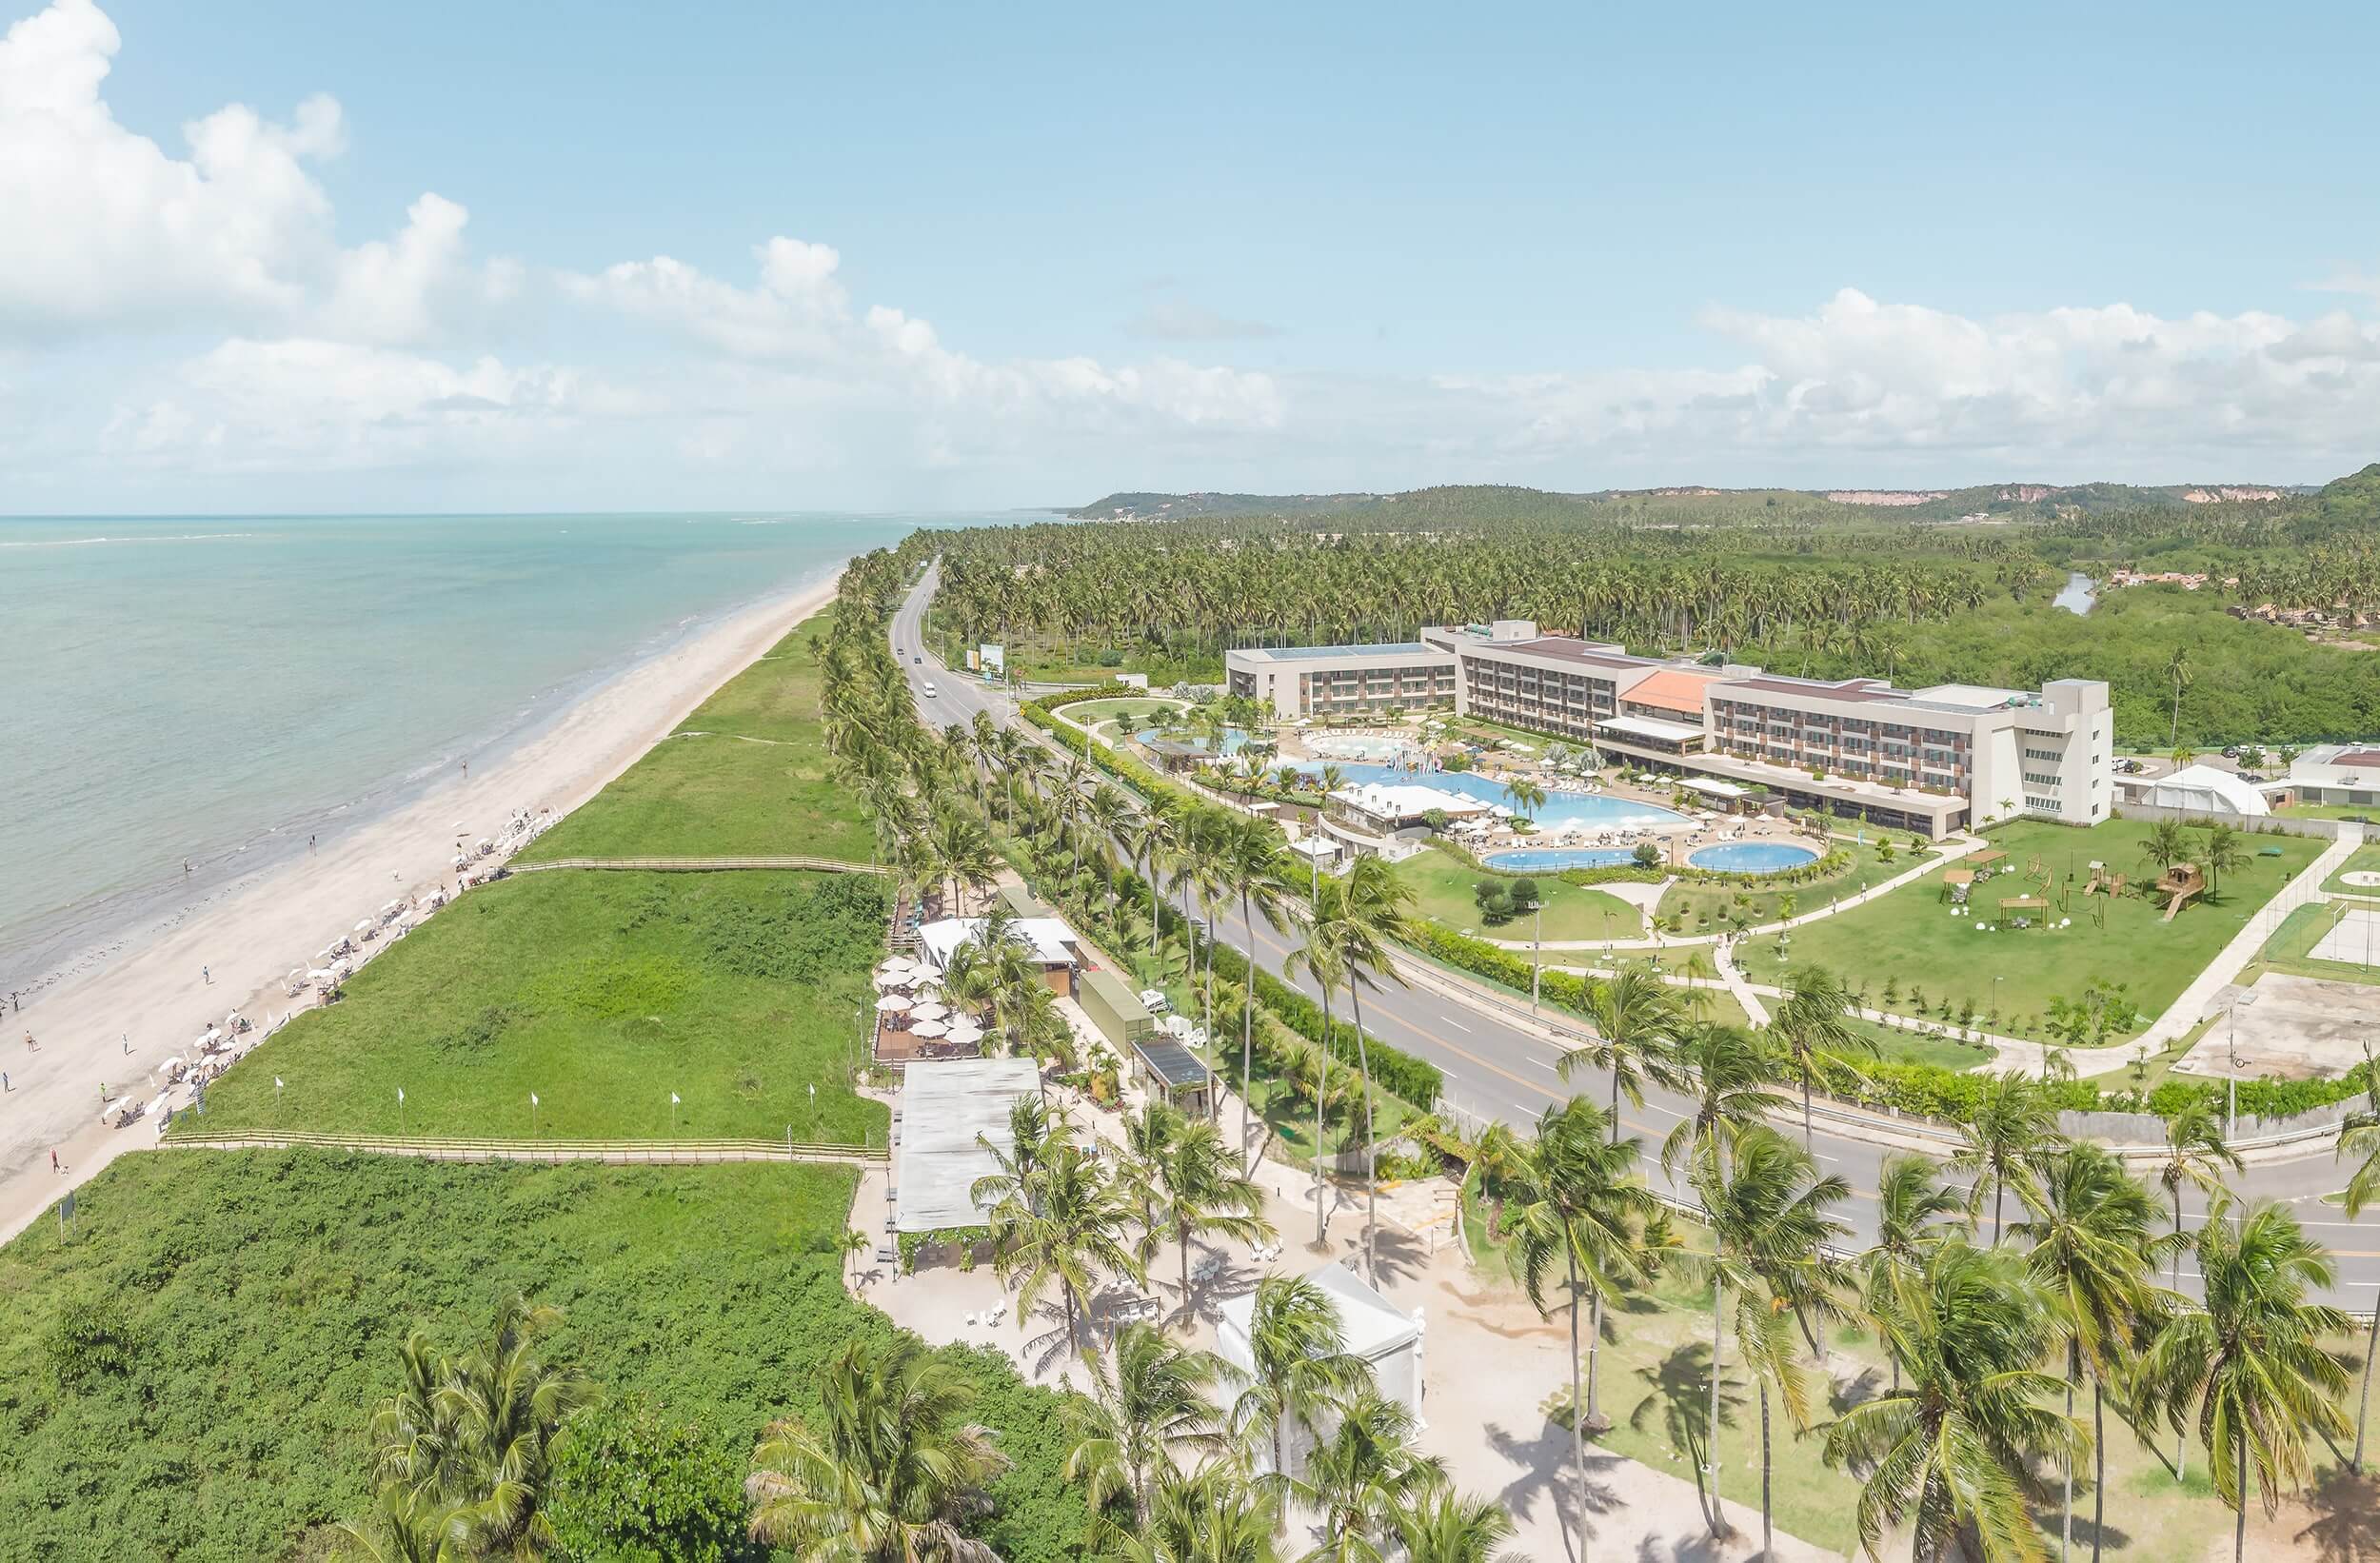 Vista aérea do Japaratinga Lounge Resort, um resort de praia no nordeste, em meio a muita vegetação e na beira-mar. É possível ver toda a sua estrutura, prédio e o complexo de piscinas, além de parte do mar.